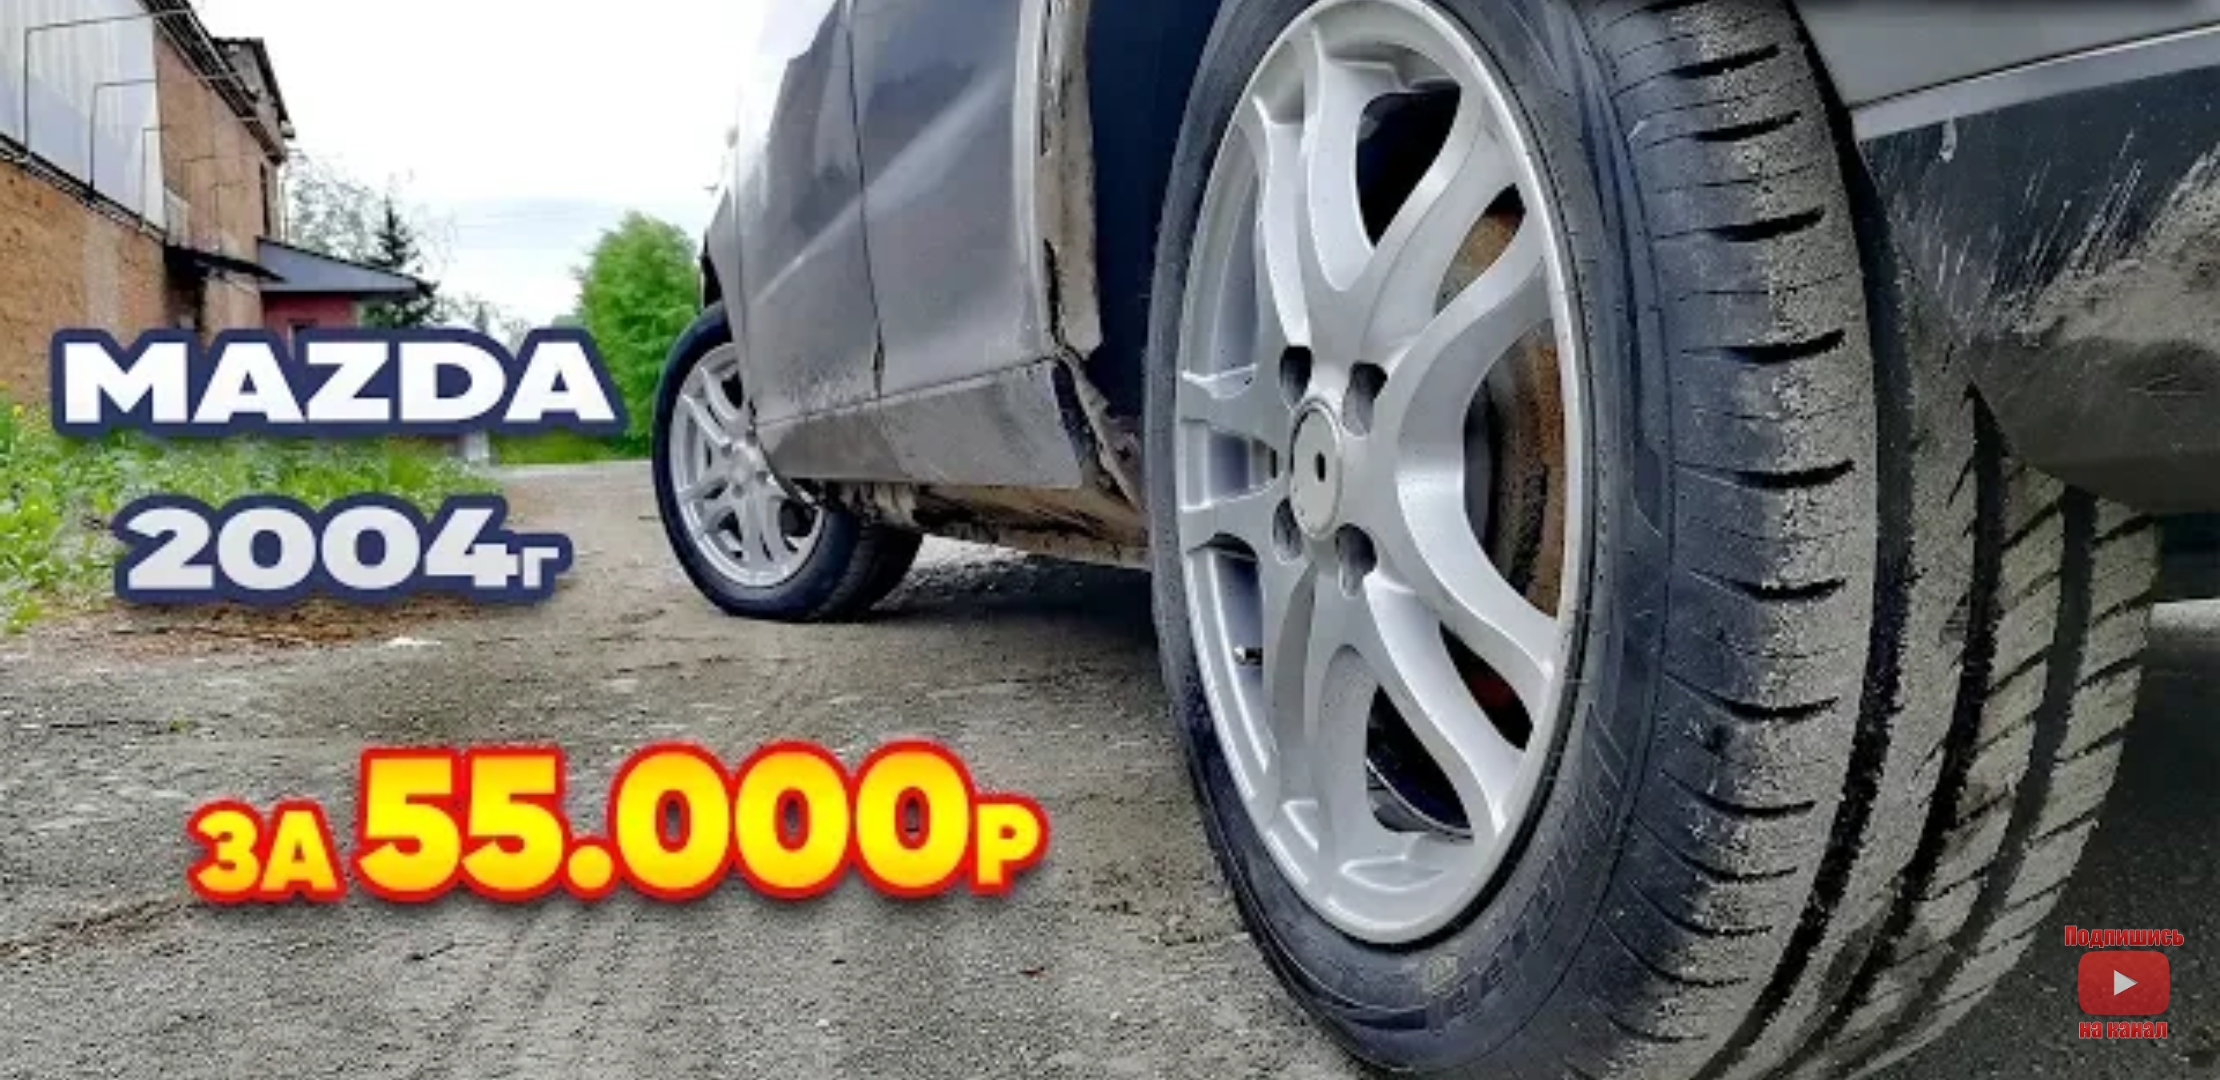 Анонс видео-теста Покупка Mazda 2004г за 55.000р